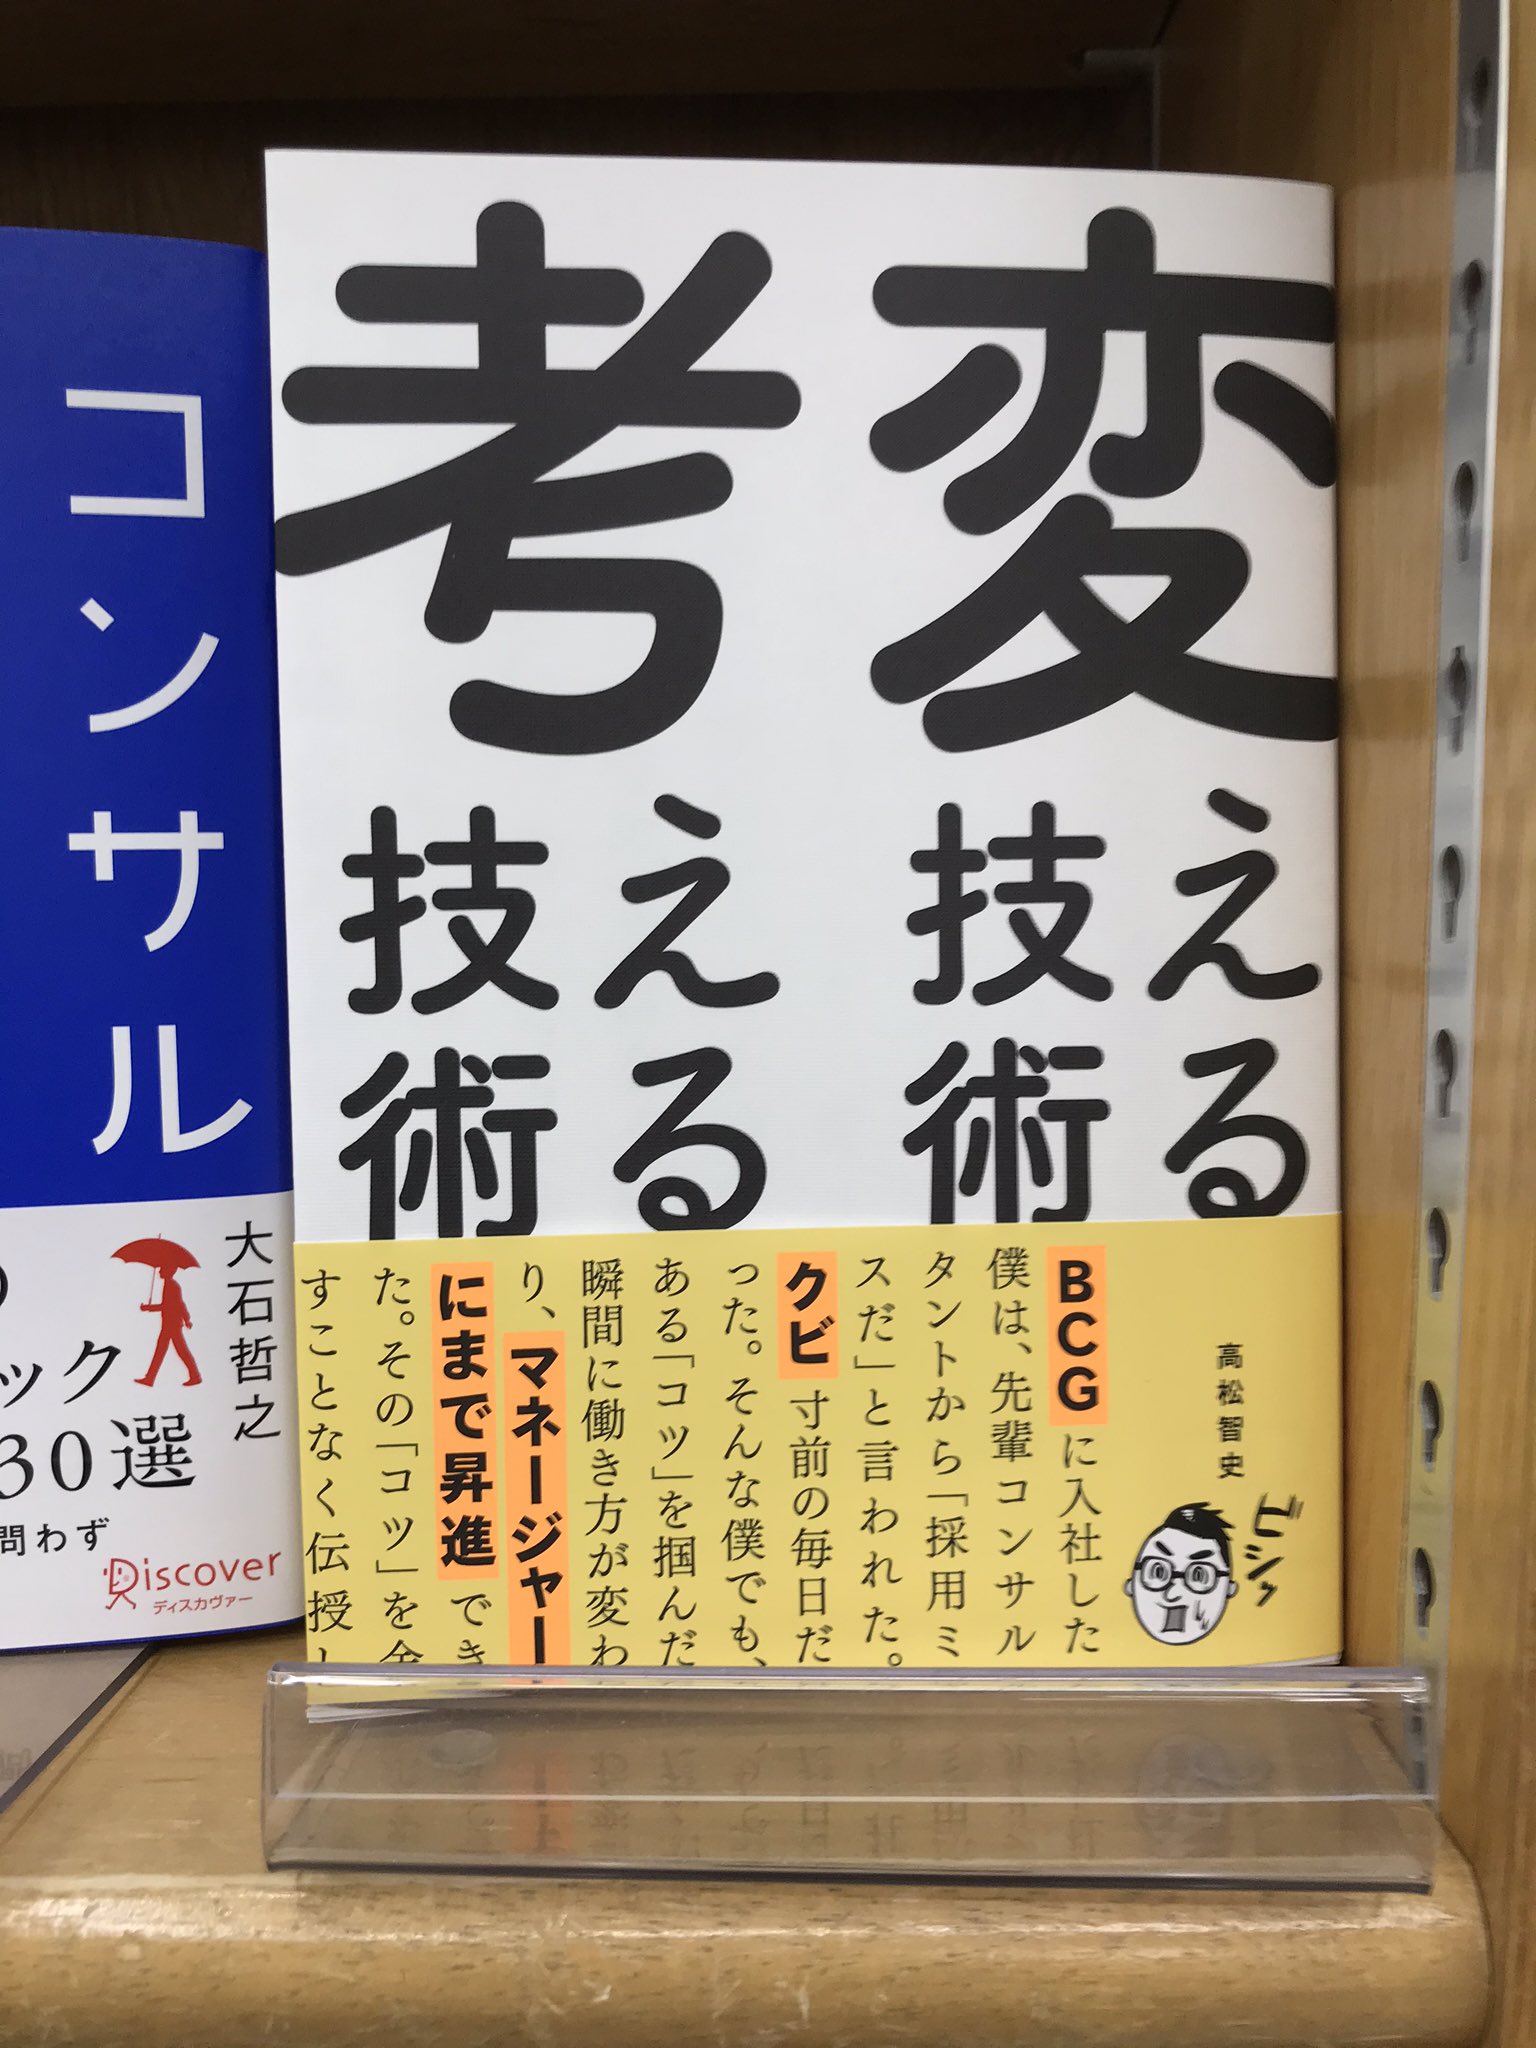 田中志 のぞみ ひっそり拙著も高松さん本の隣の隣において頂いている あのジュンク堂書店池袋本店さんに 感無量です Twitter